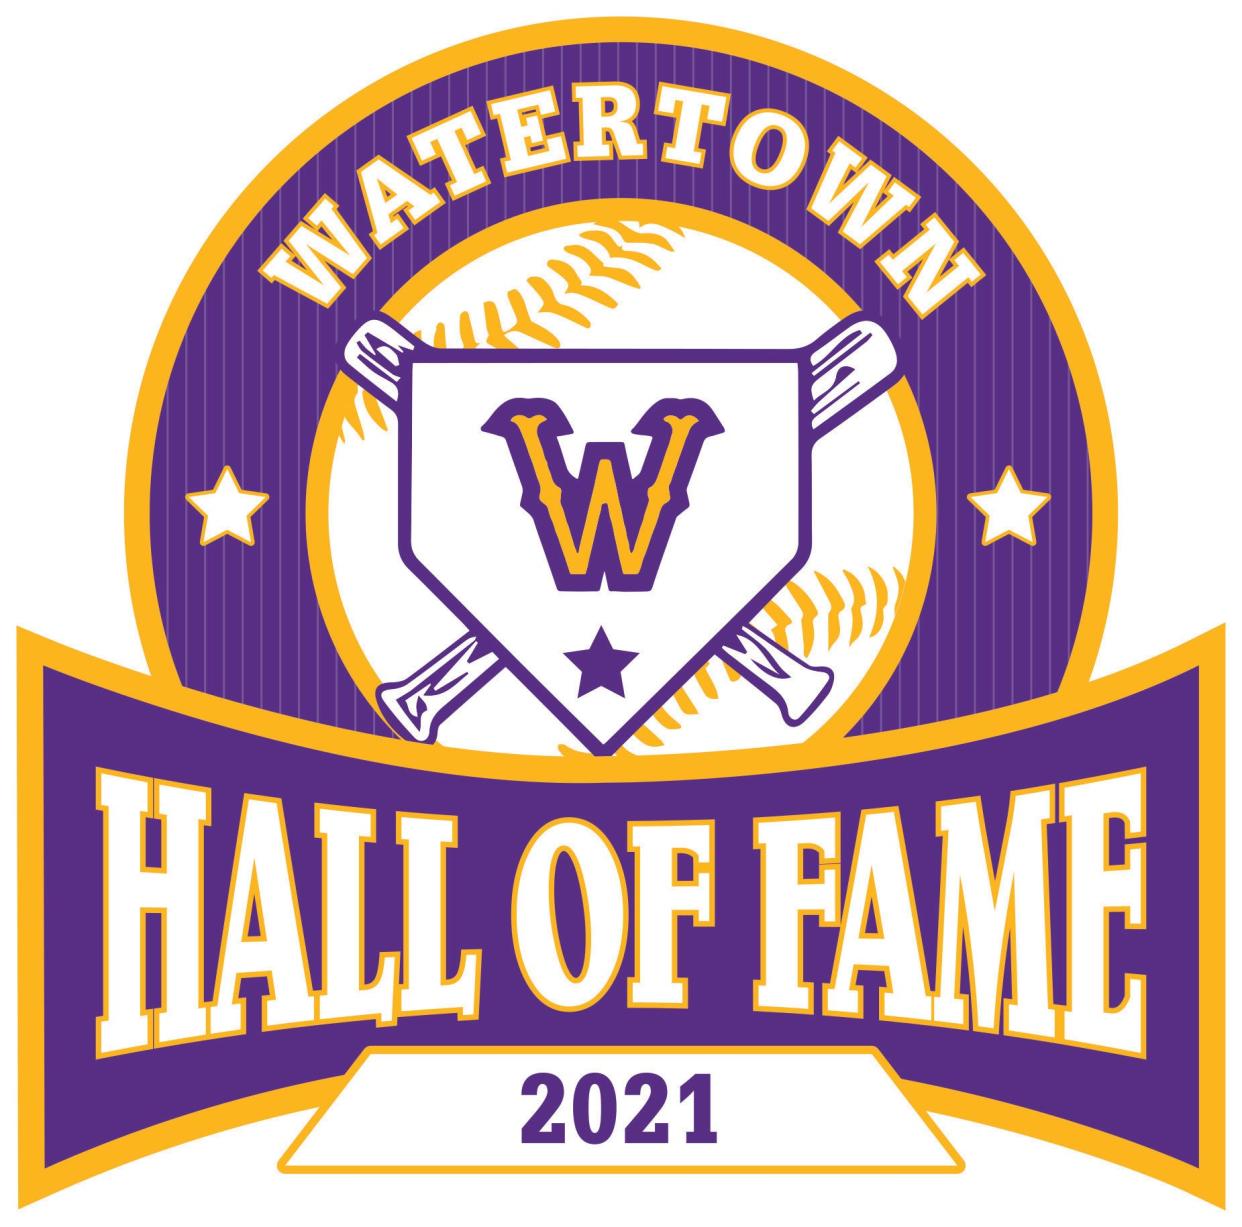 Watertown Baseball Hall of Fame Logo